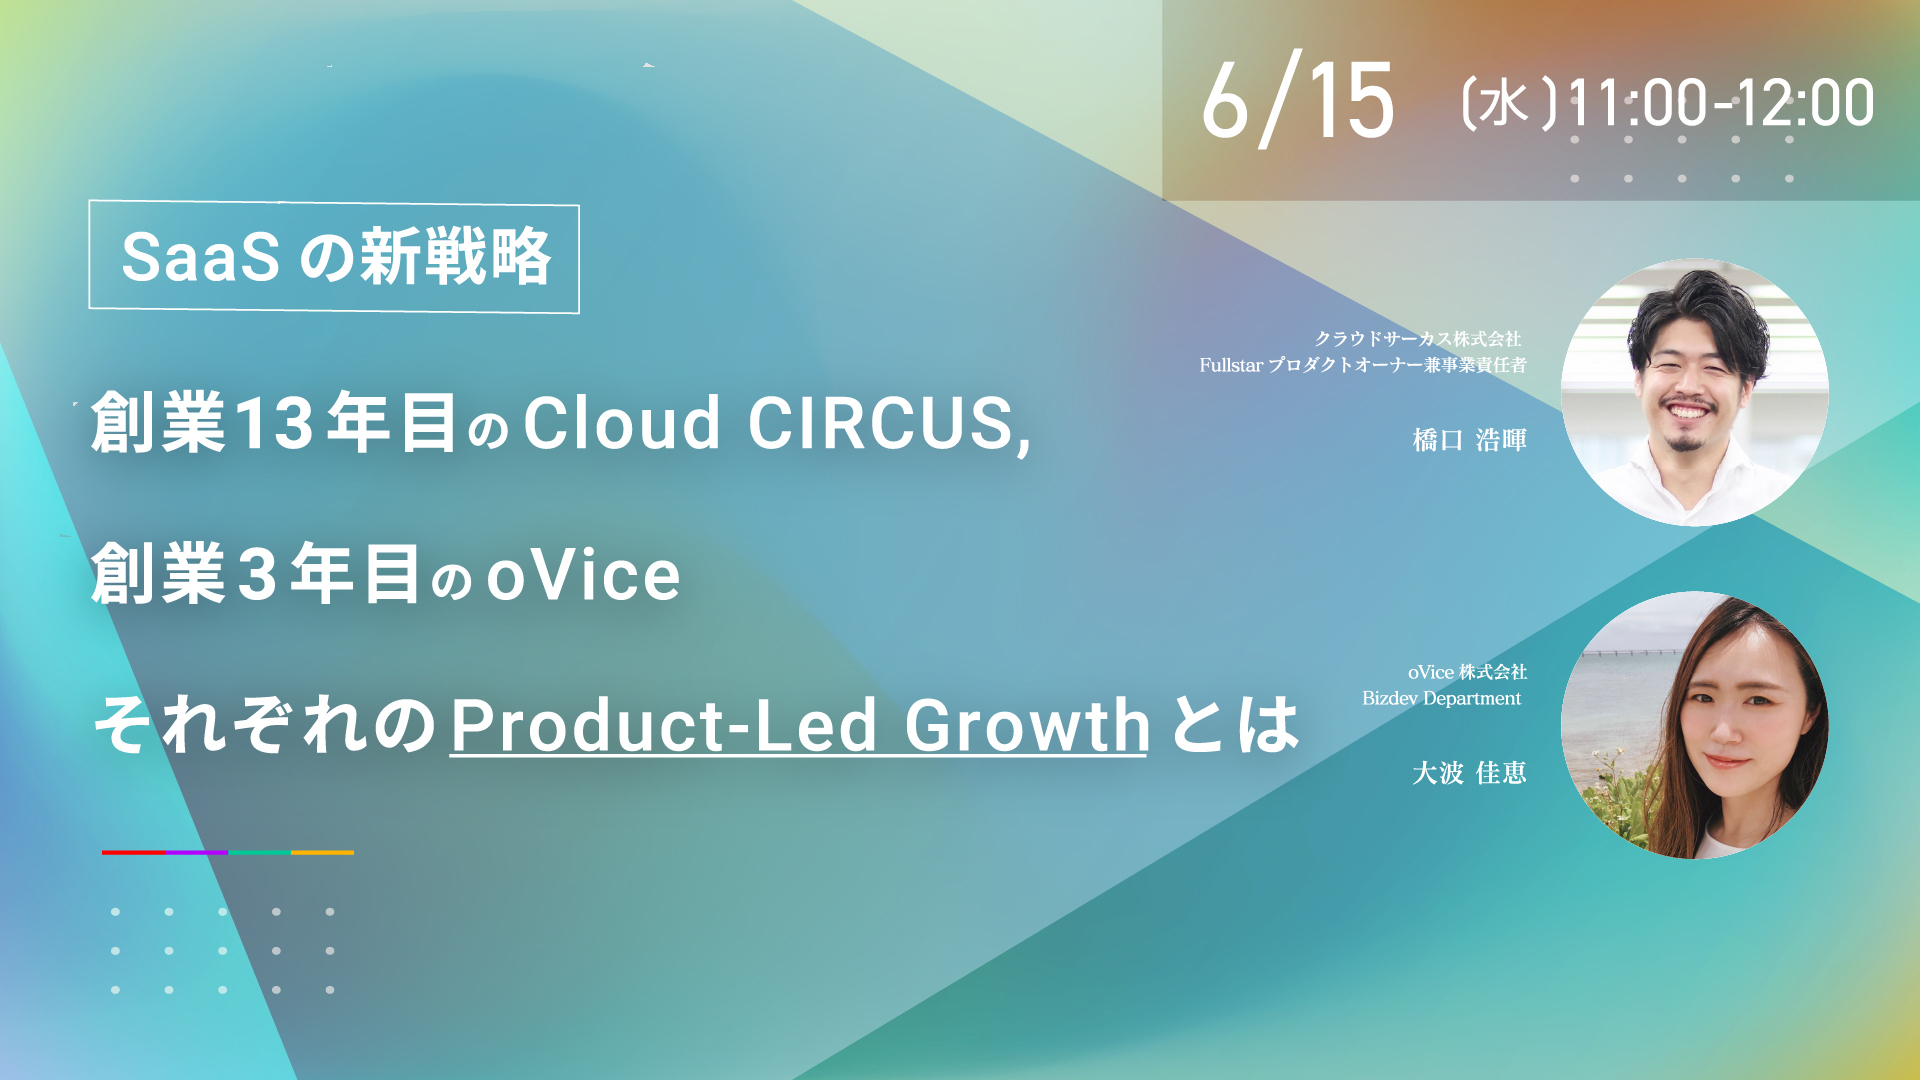 【6/15(水)】SaaSの新戦略！Cloud CIRCUS、oVice。それぞれのProduct-Led Growthとは